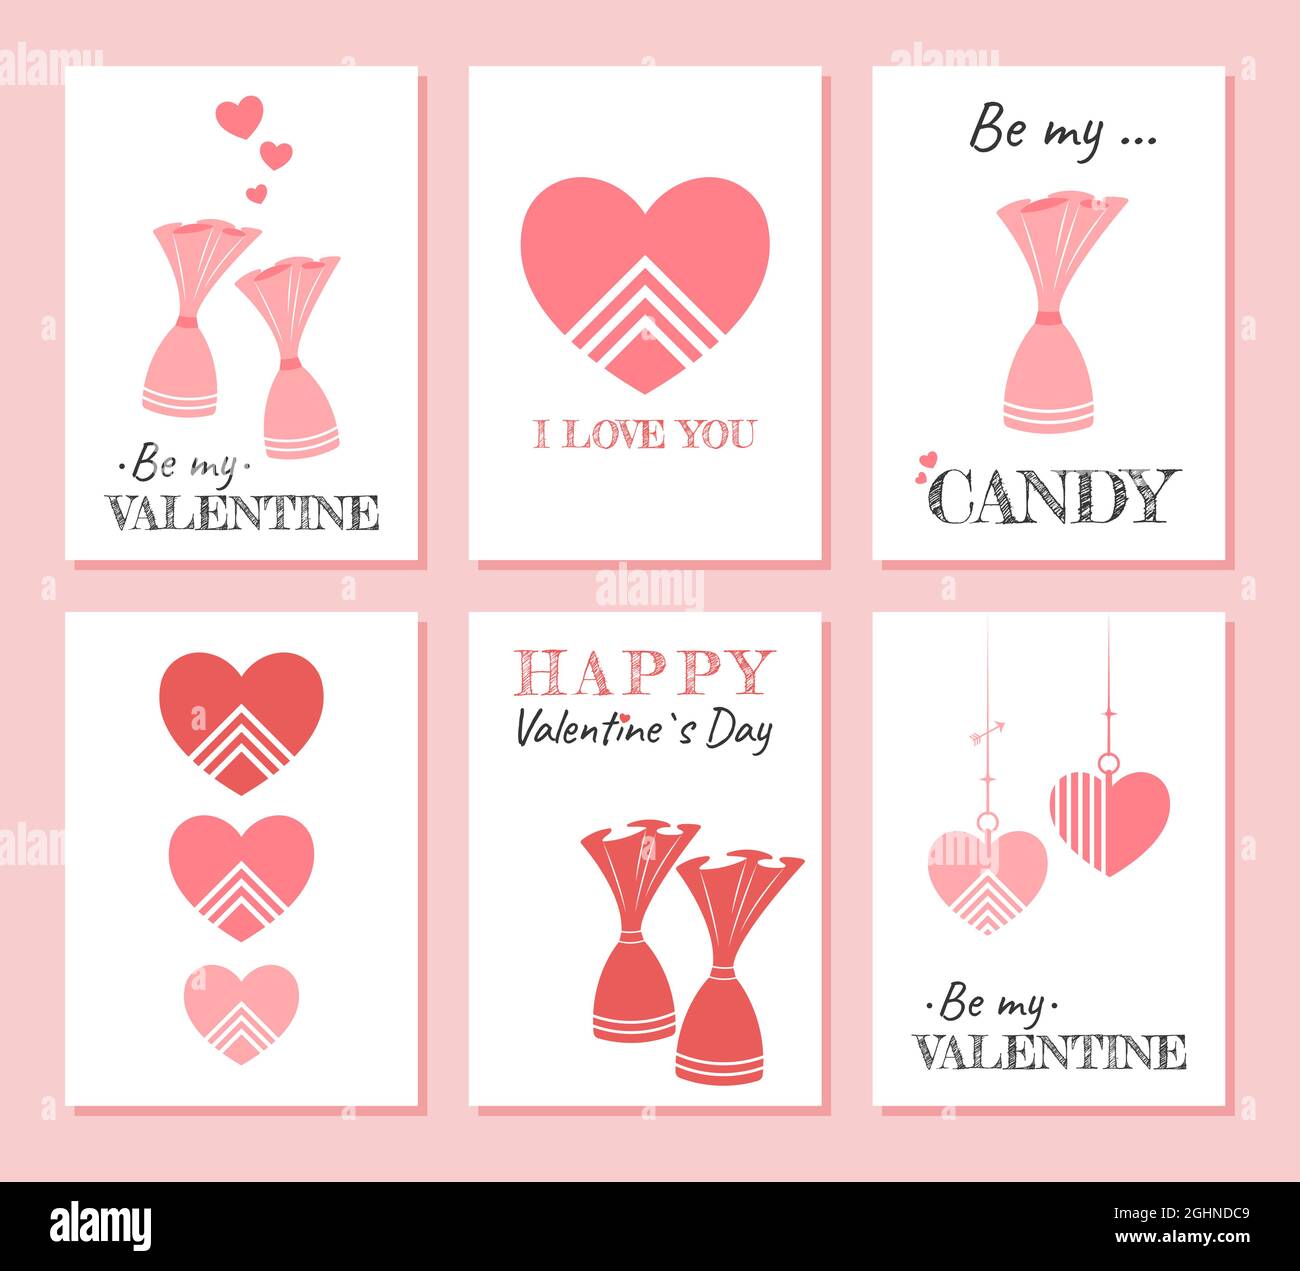 Niedliche Weihnachts-Set von Grußkarten zum Valentinstag. Schöne Postkarten-Vorlagen mit rosa Herzen, Süßigkeiten und Text. Stylische, minimalistische Poster Stock Vektor